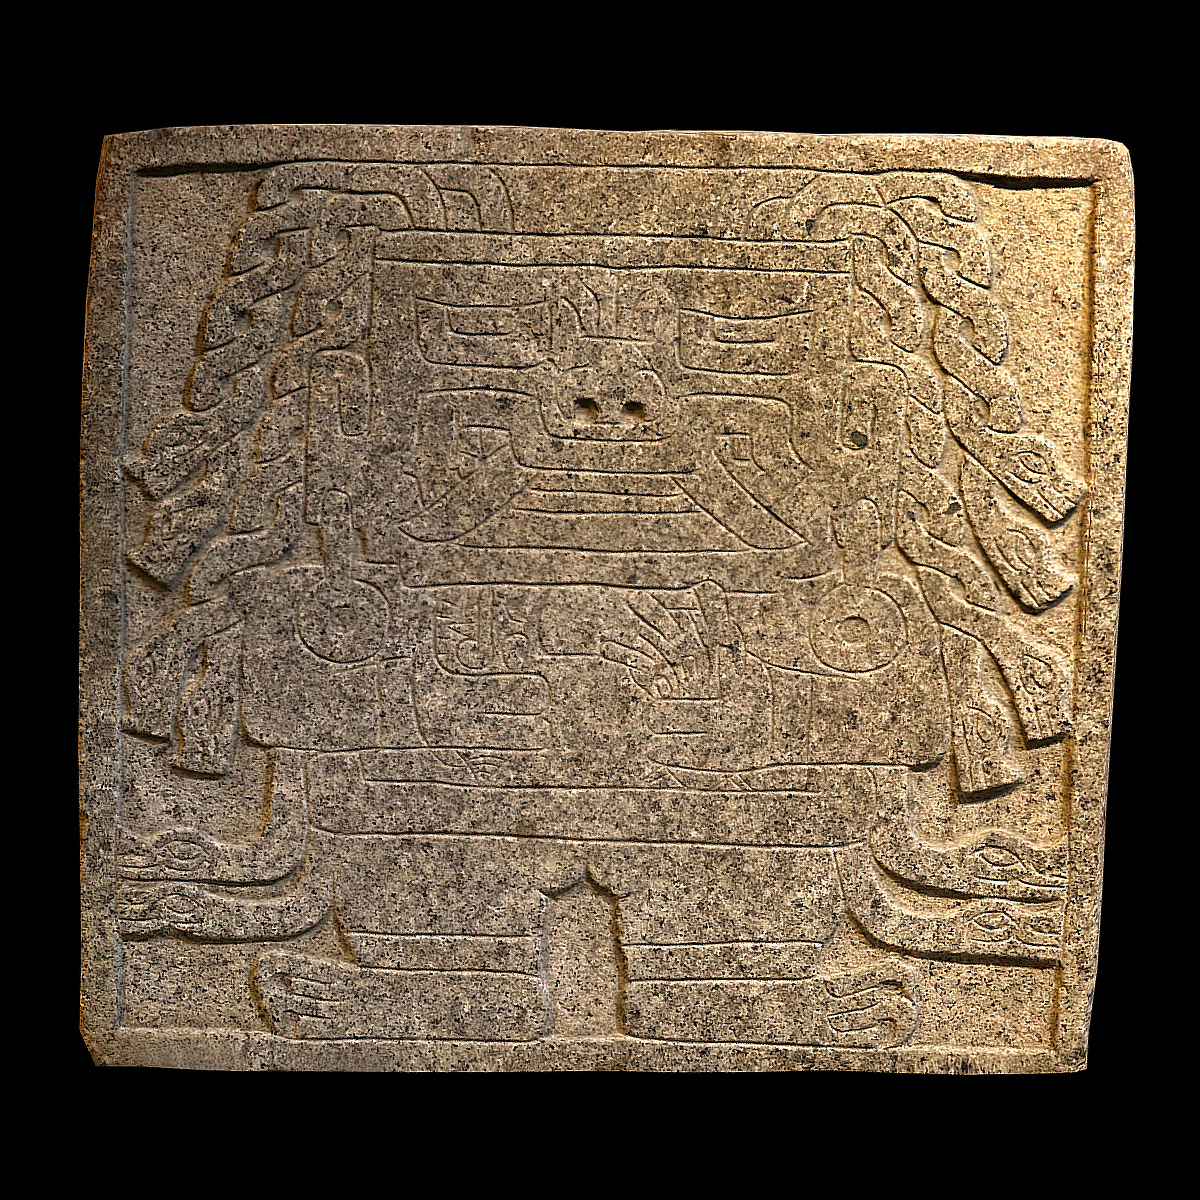 Рельефное изображение божества с двумя видами раковин в руках (стромбус в правой руке, спондилюс в левой руке). Культура Чавин. Коллекция Museo Nacional de Chavín.